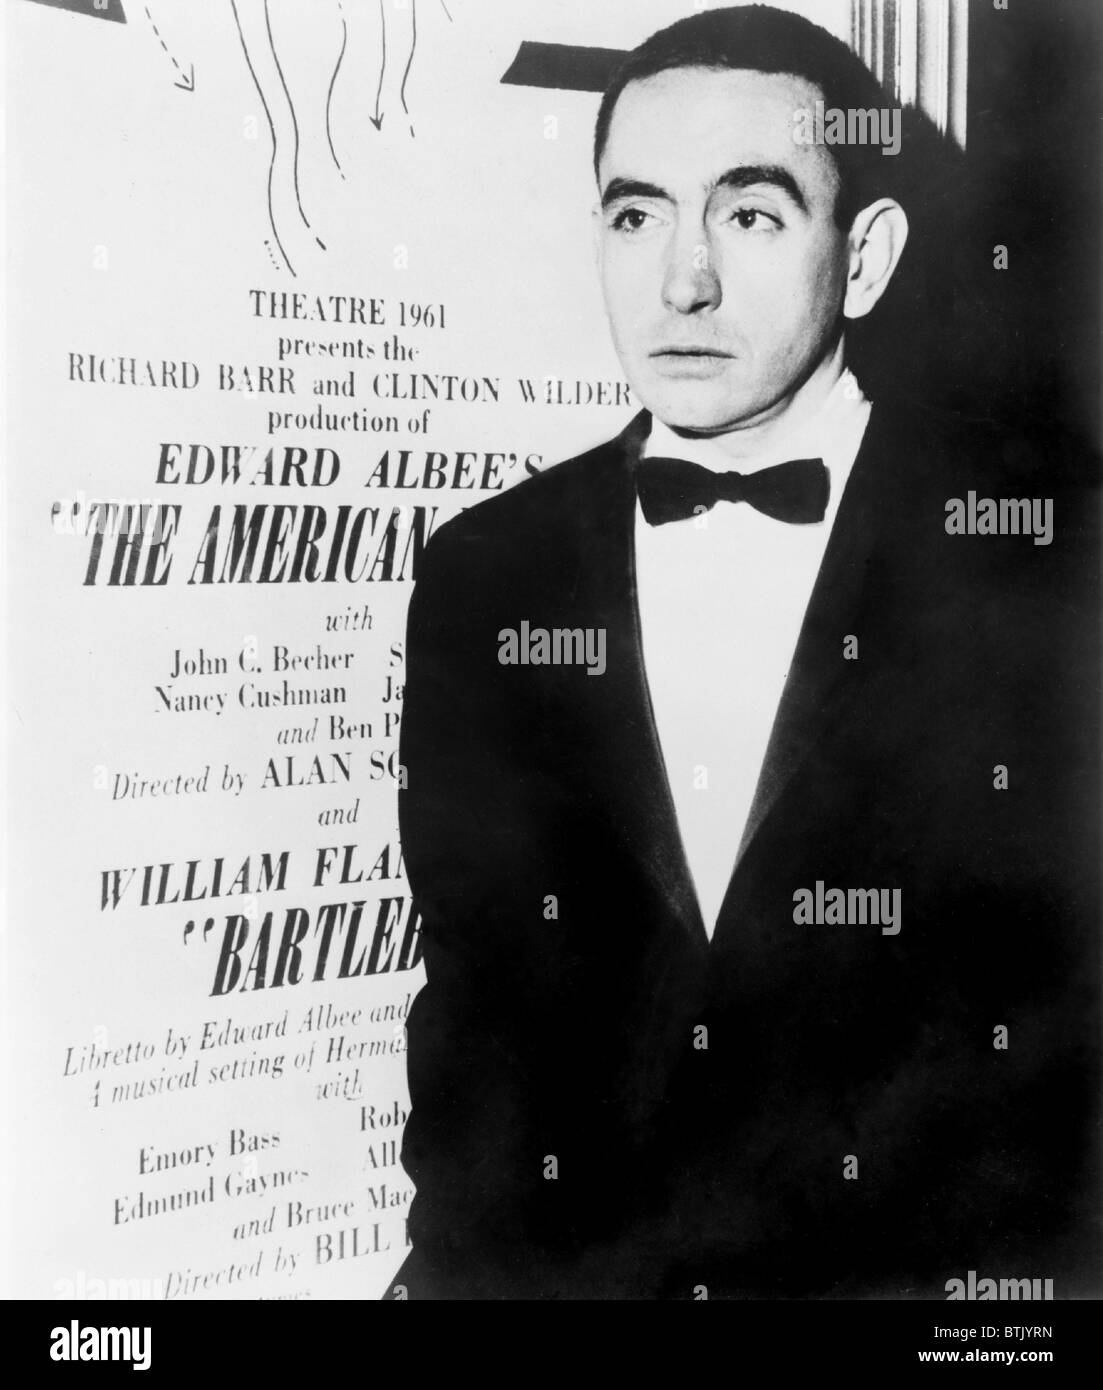 Edward Albee (b. 1928) dramaturge américain debout à côté de l'affiche pour sa pièce Le rêve américain en 1961. Banque D'Images